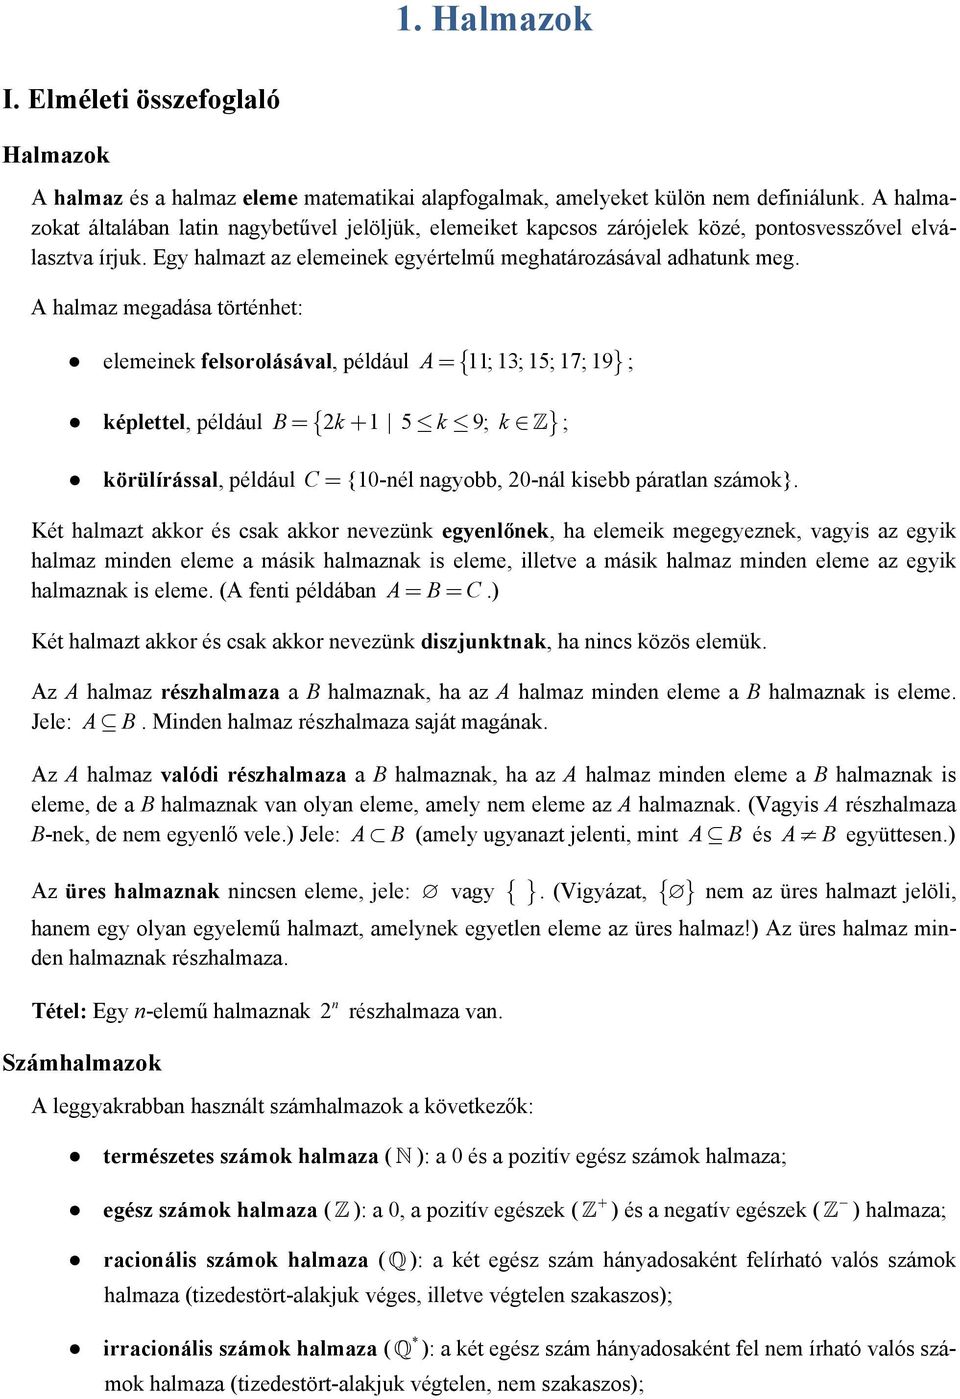 A halmaz megadása történhet: elemeinek felsorolásával, például A = { 11; 13; 15; 17; 19} ; képlettel, például B { k 1 5 k 9; k } = + ; körülírással, például C = {10-nél nagyobb, 0-nál kisebb páratlan